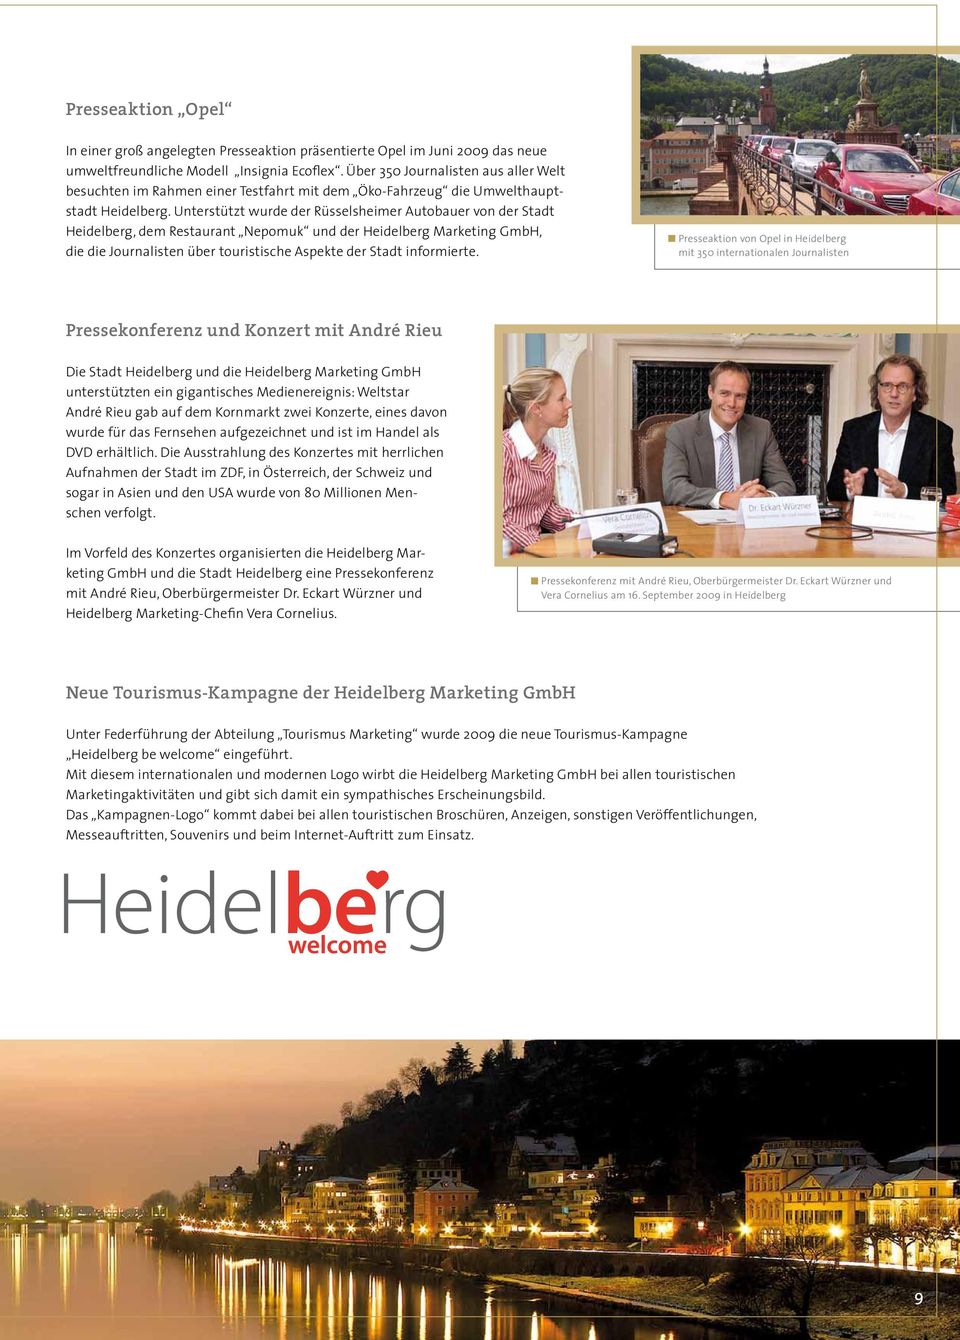 Unterstützt wurde der Rüsselsheimer Autobauer von der Stadt Heidelberg, dem Restaurant Nepomuk und der Heidelberg Marketing GmbH, die die Journalisten über touristische Aspekte der Stadt informierte.